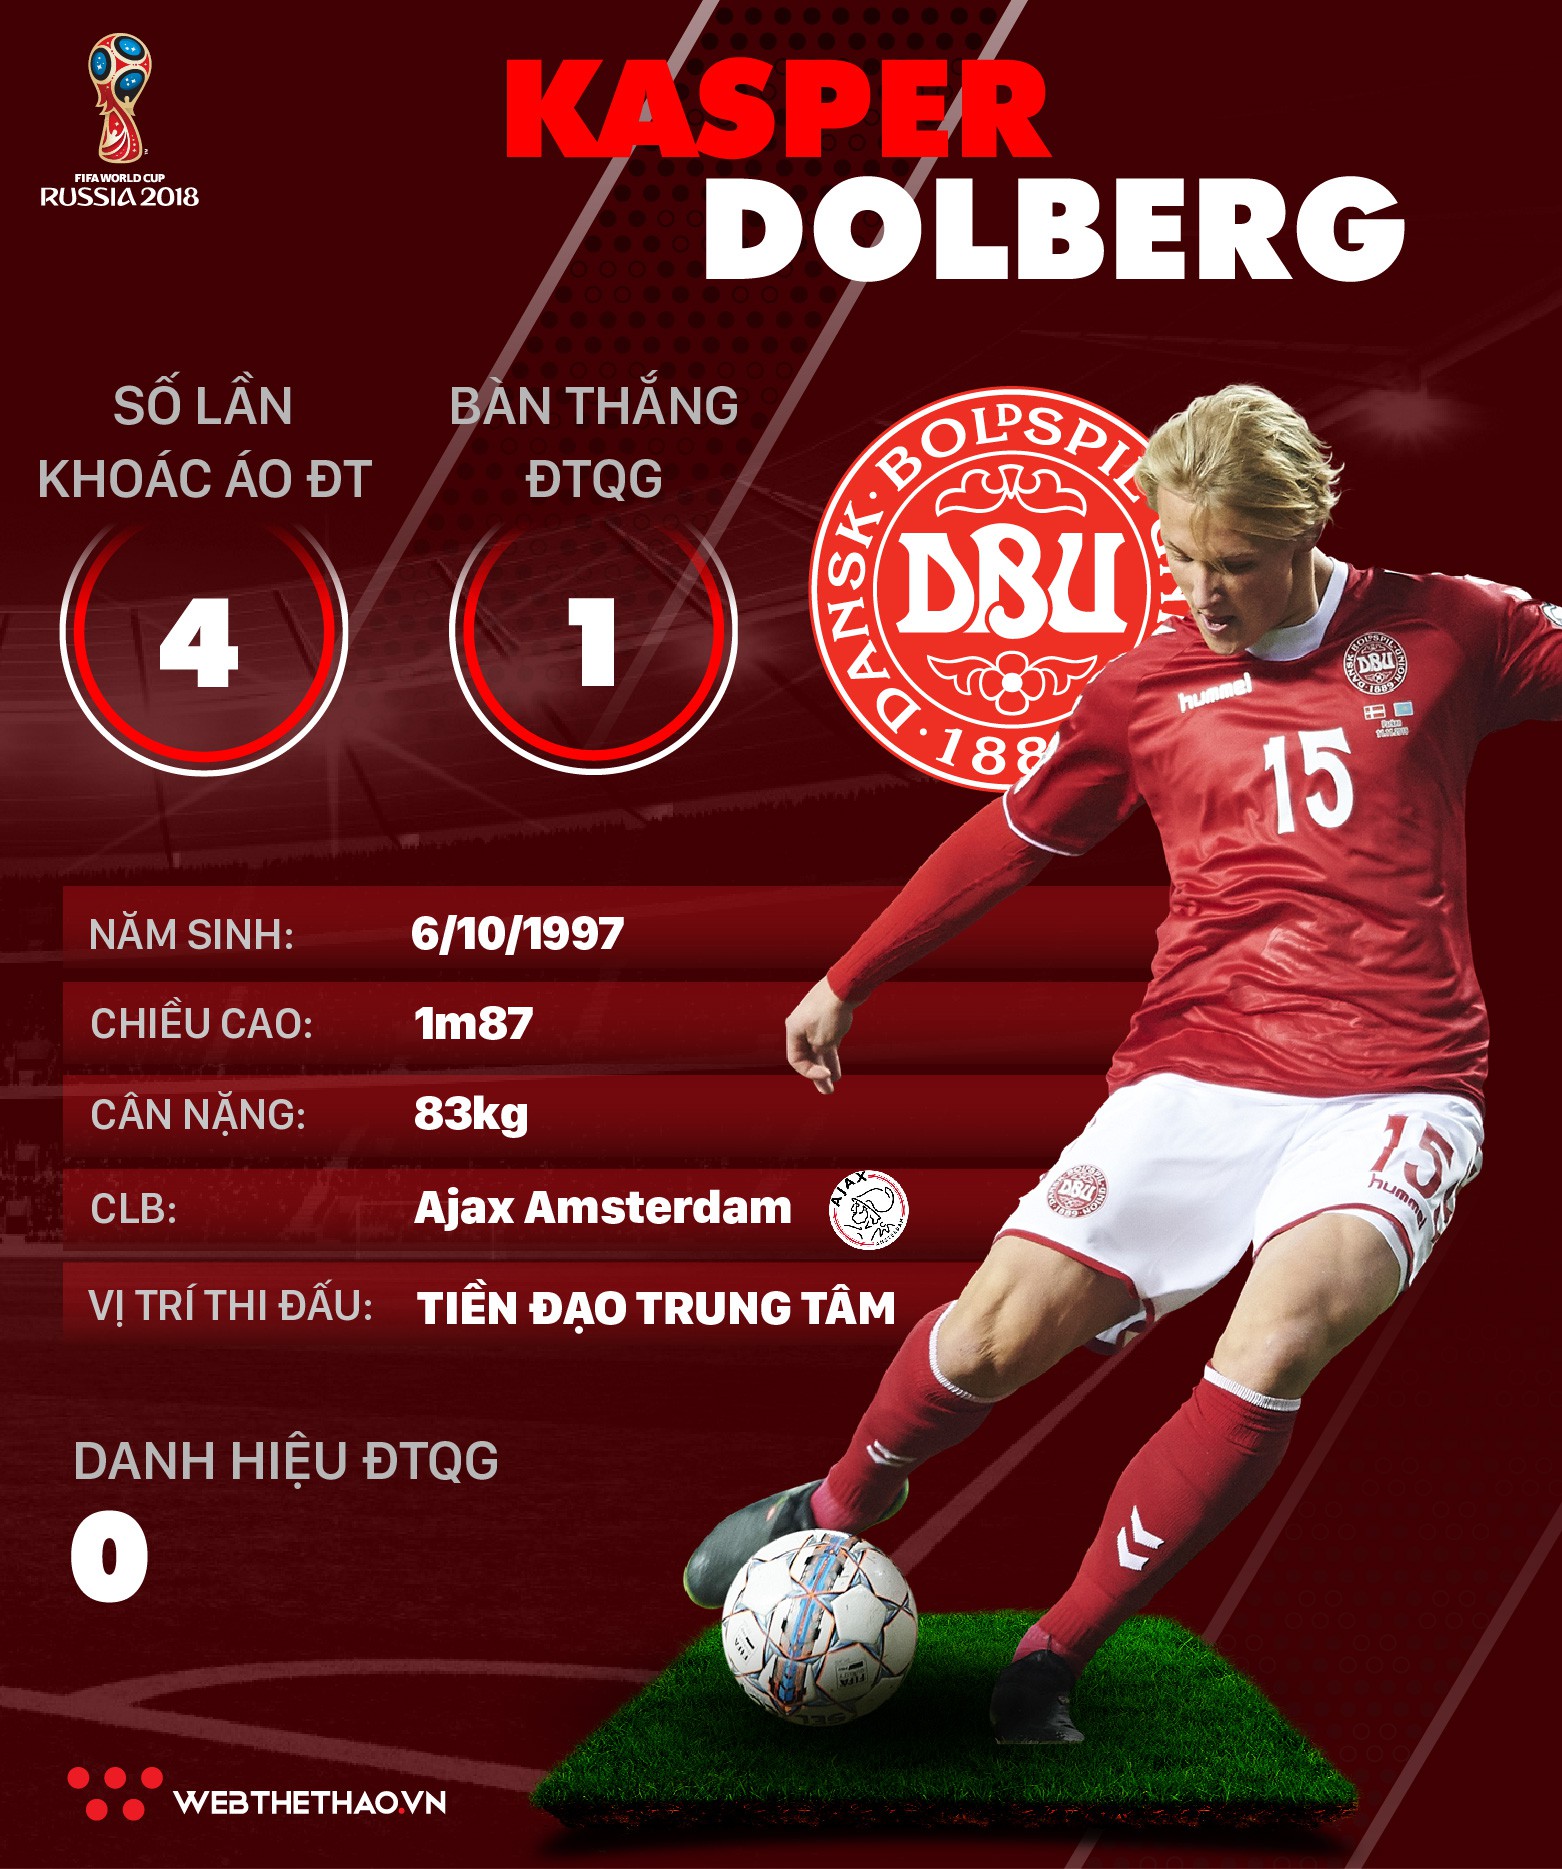 Thông tin cầu thủ Kasper Dolberg của ĐT Đan Mạch dự World Cup 2018 - Ảnh 1.